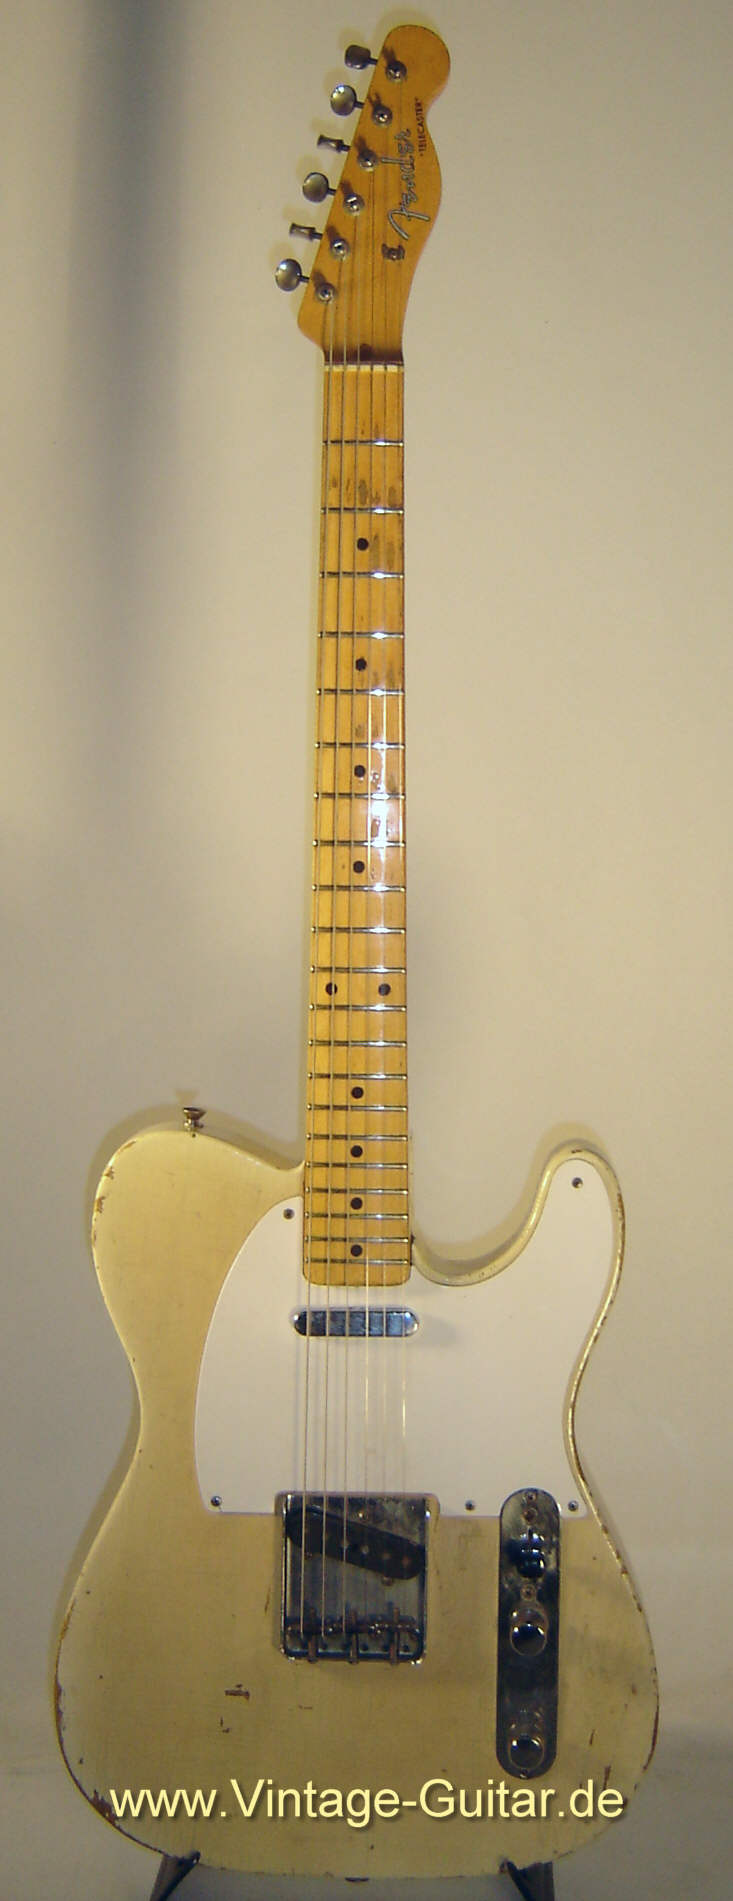 Fender_Telecaster_1957_blond_front.jpg